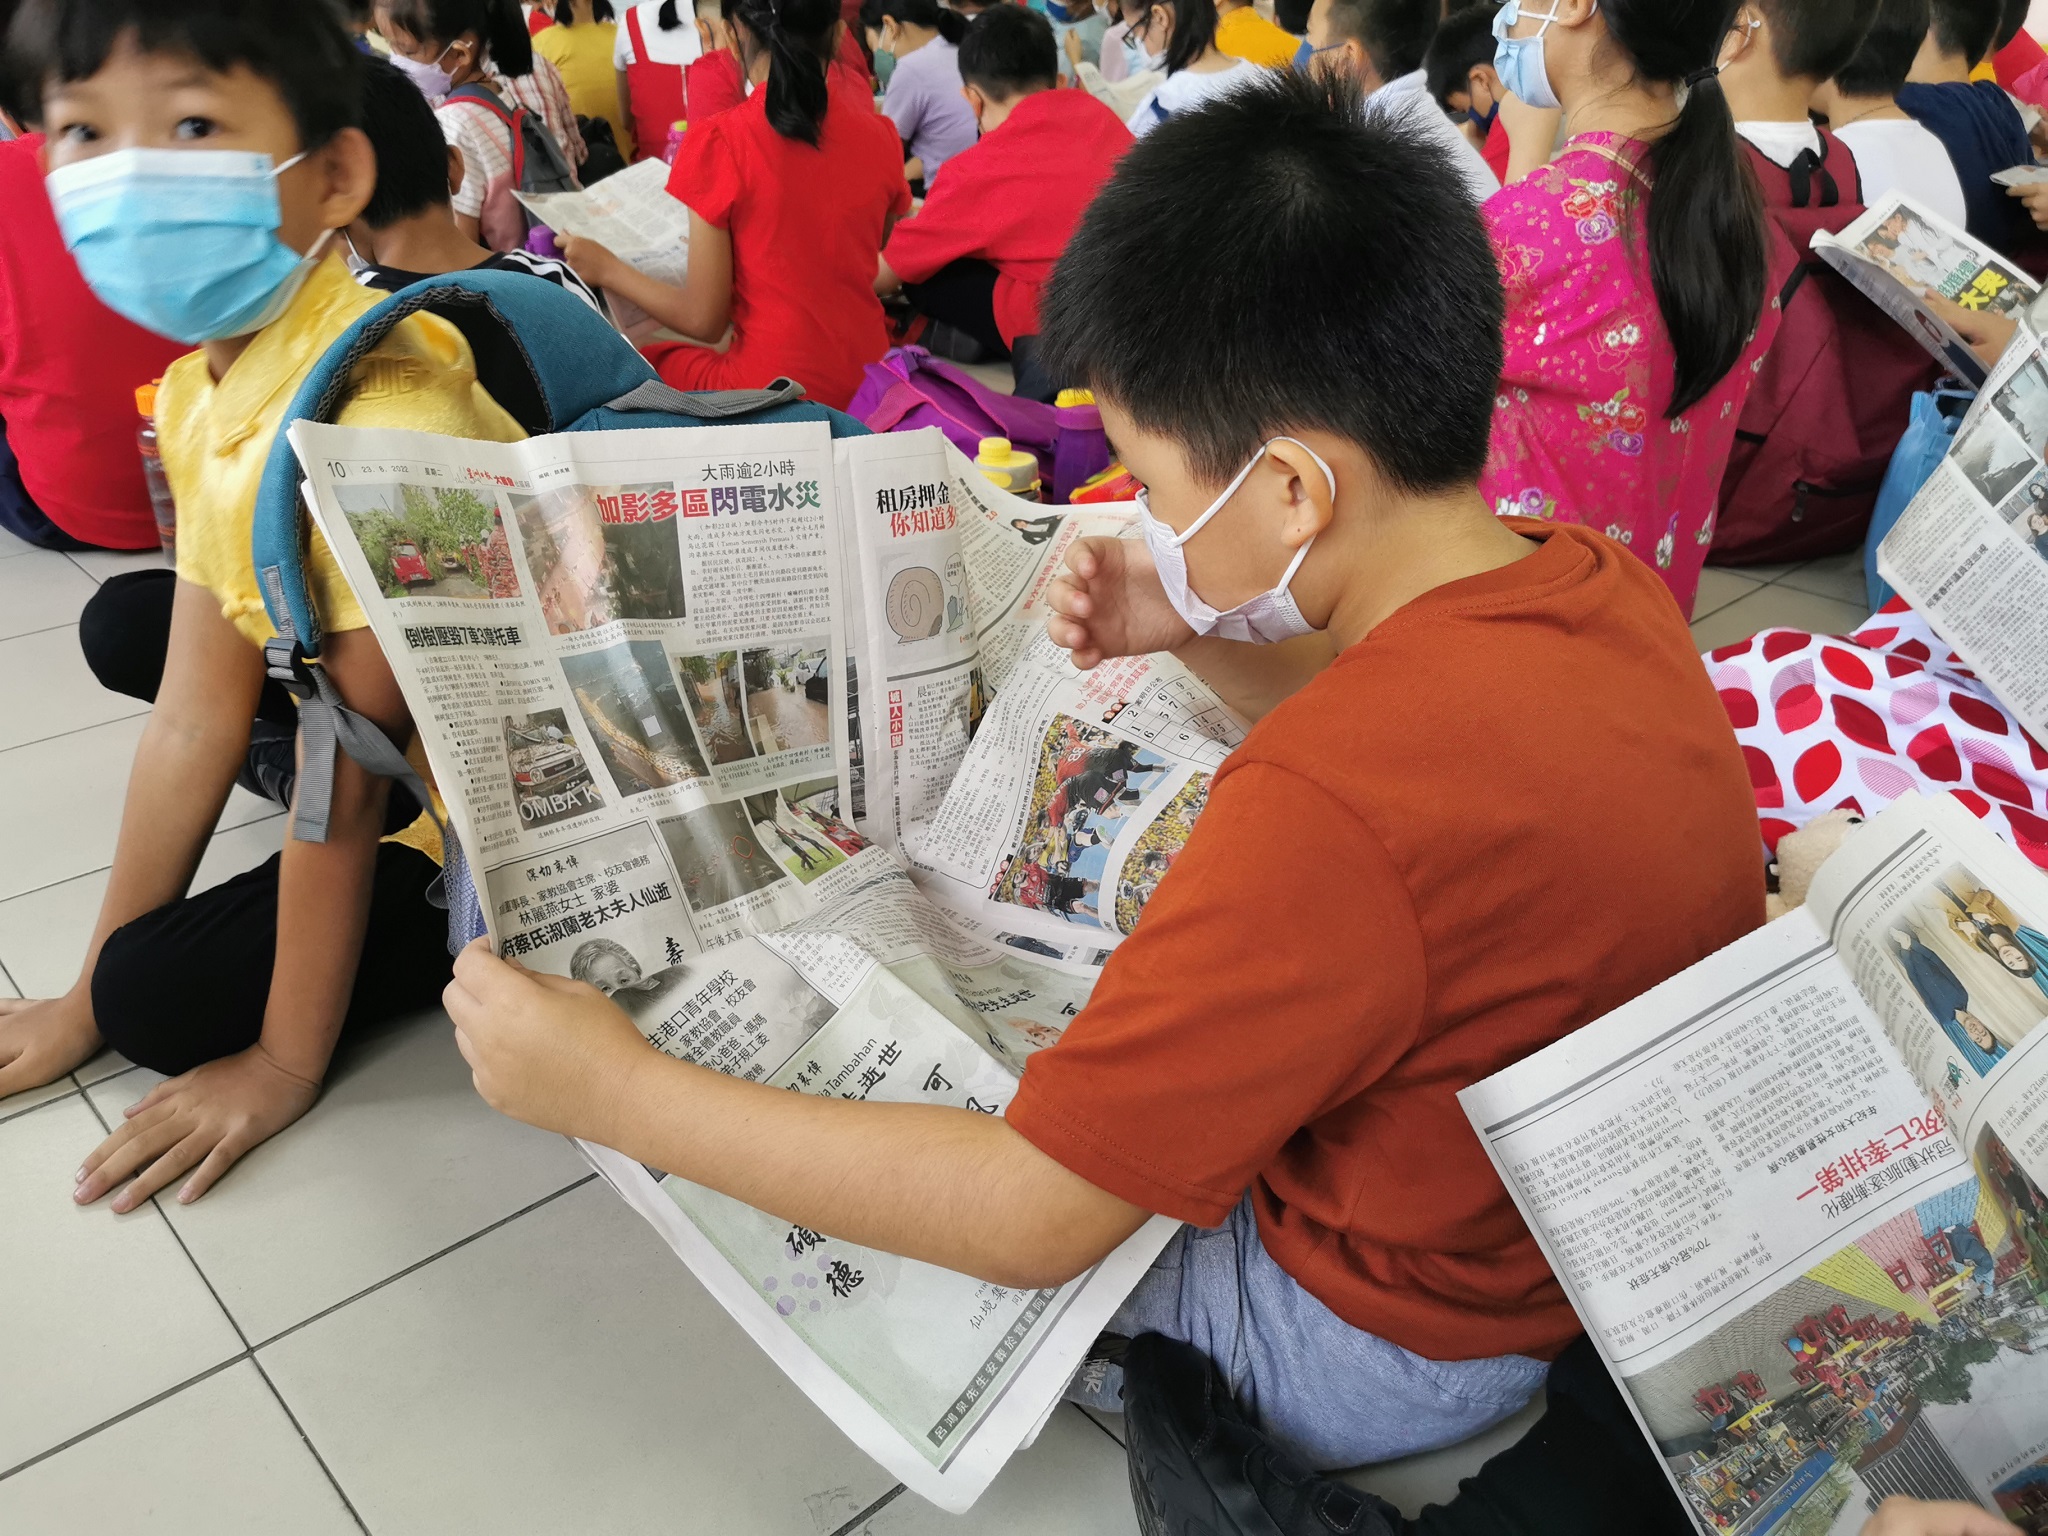 大都会：万津启化华小董事部赞助该校四至六年级学生每日15份《星洲日报》